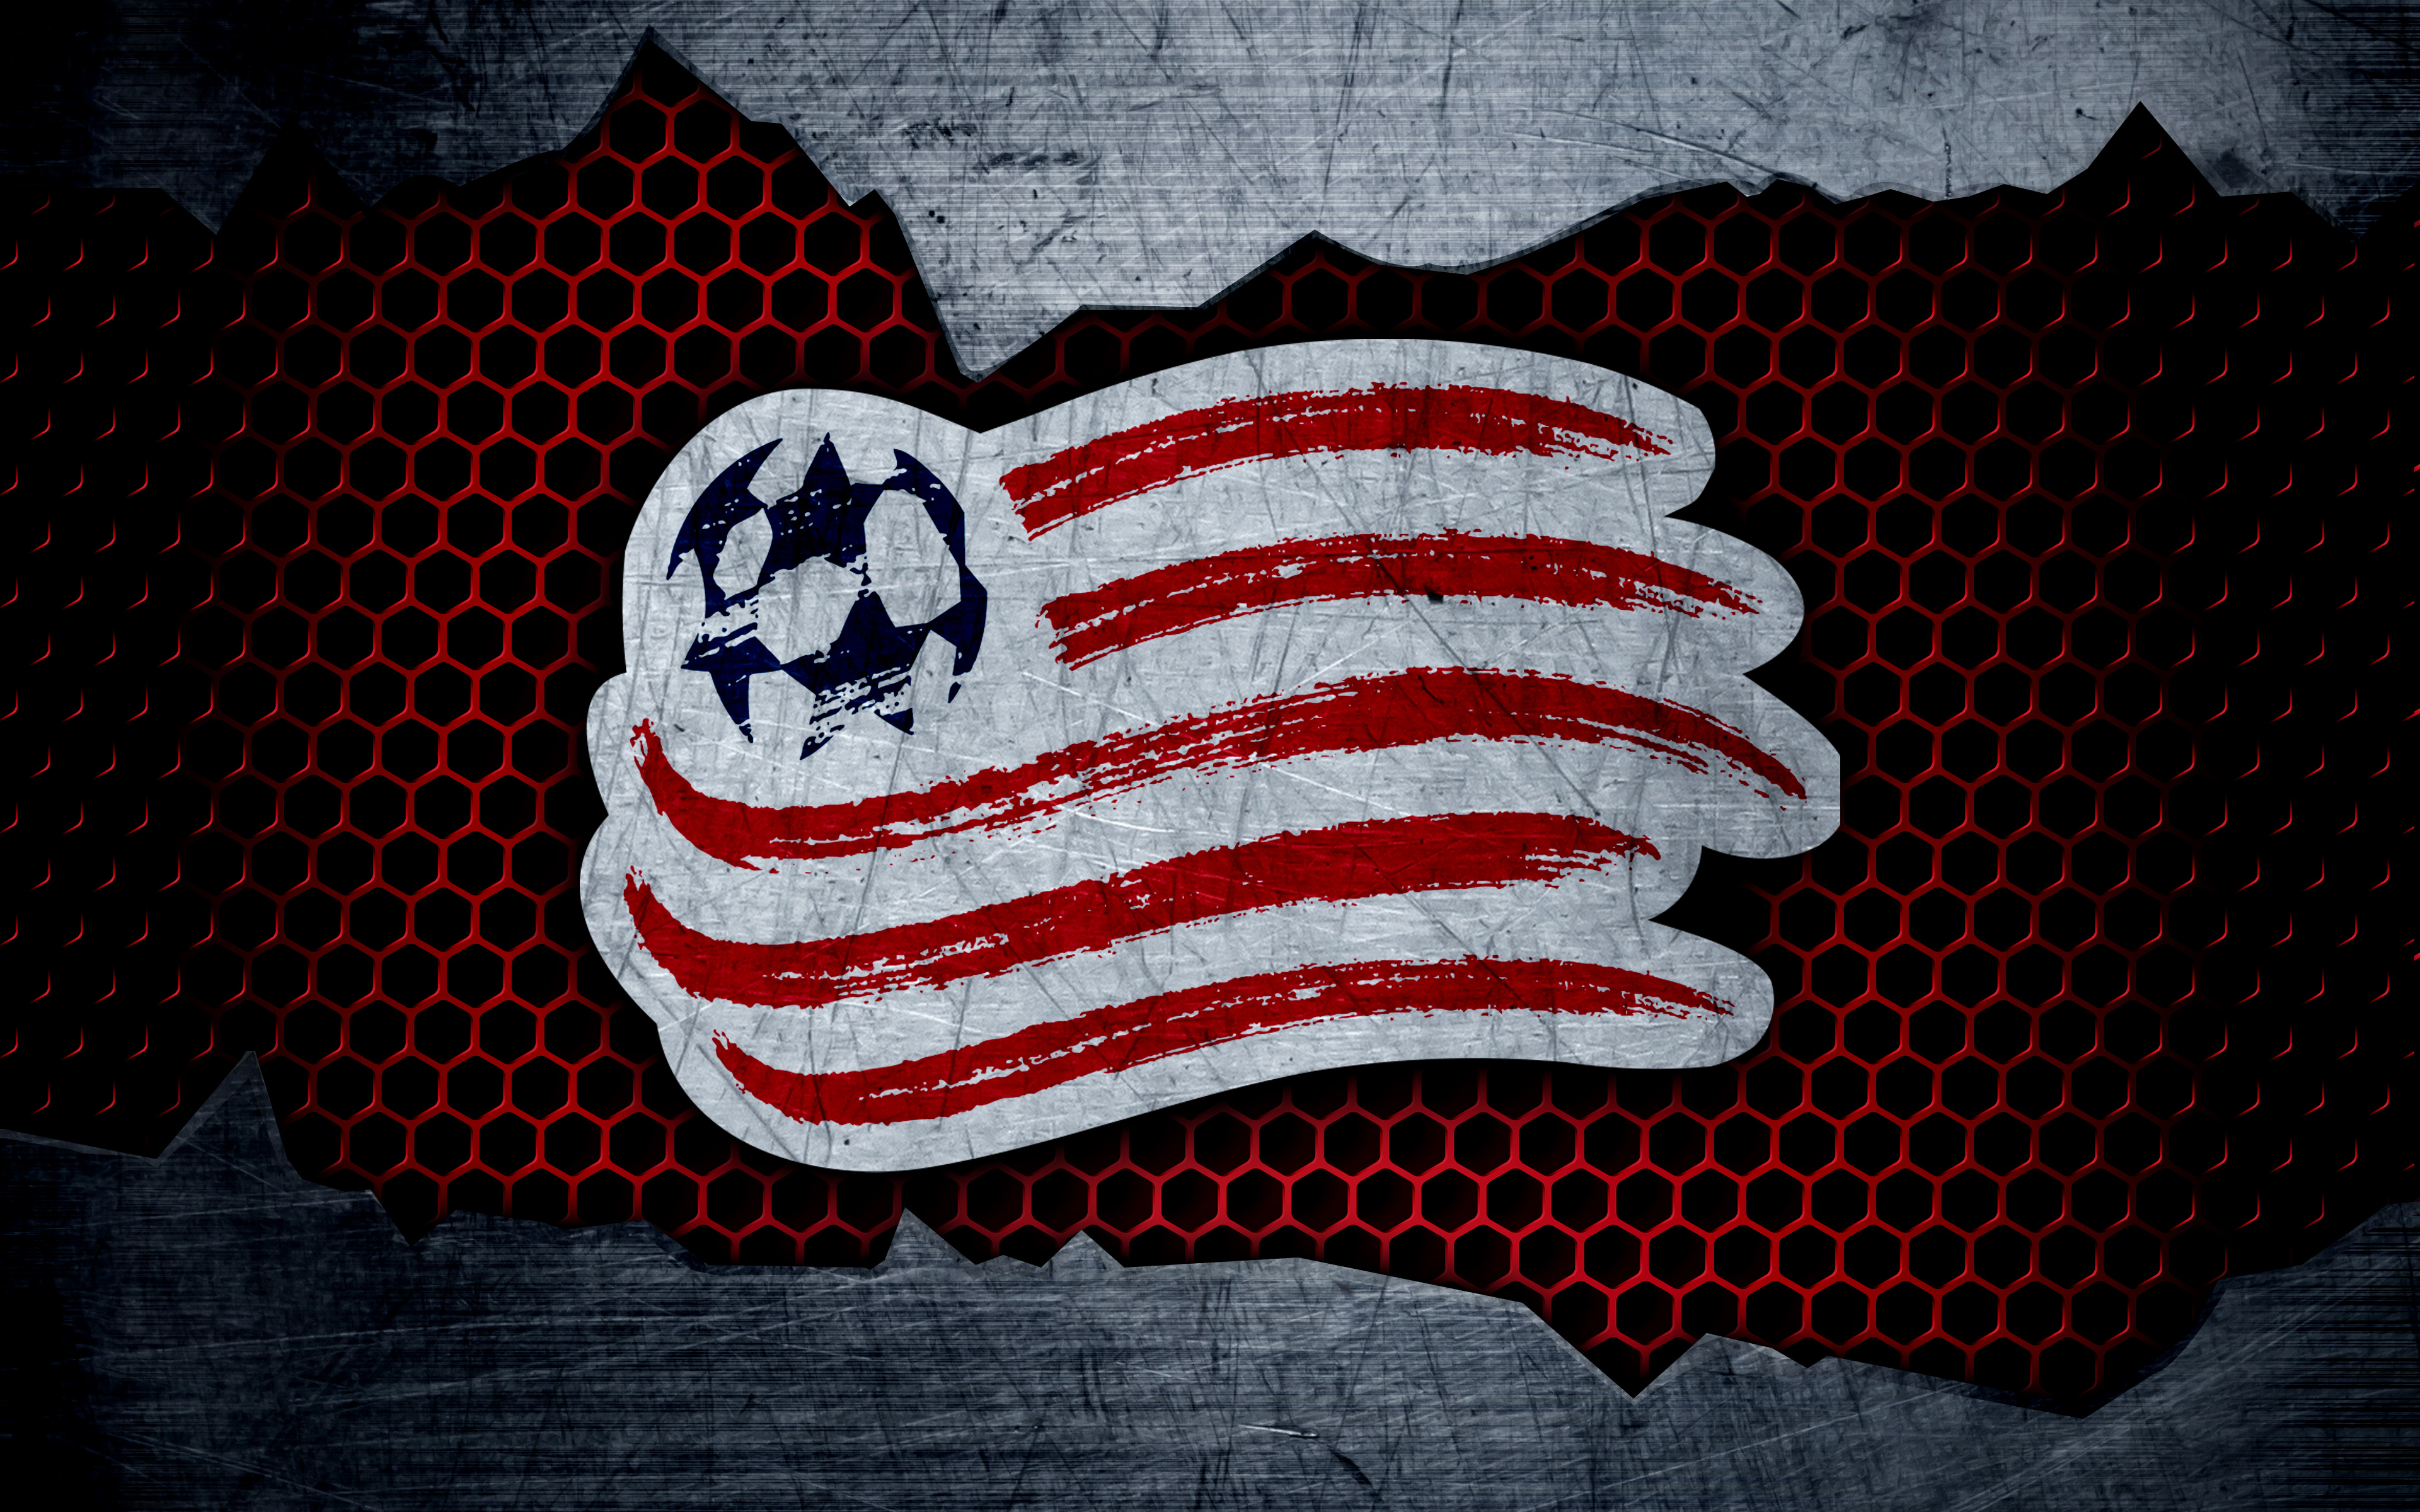 Logo Mls New England Revolution Soccer 3840x2400